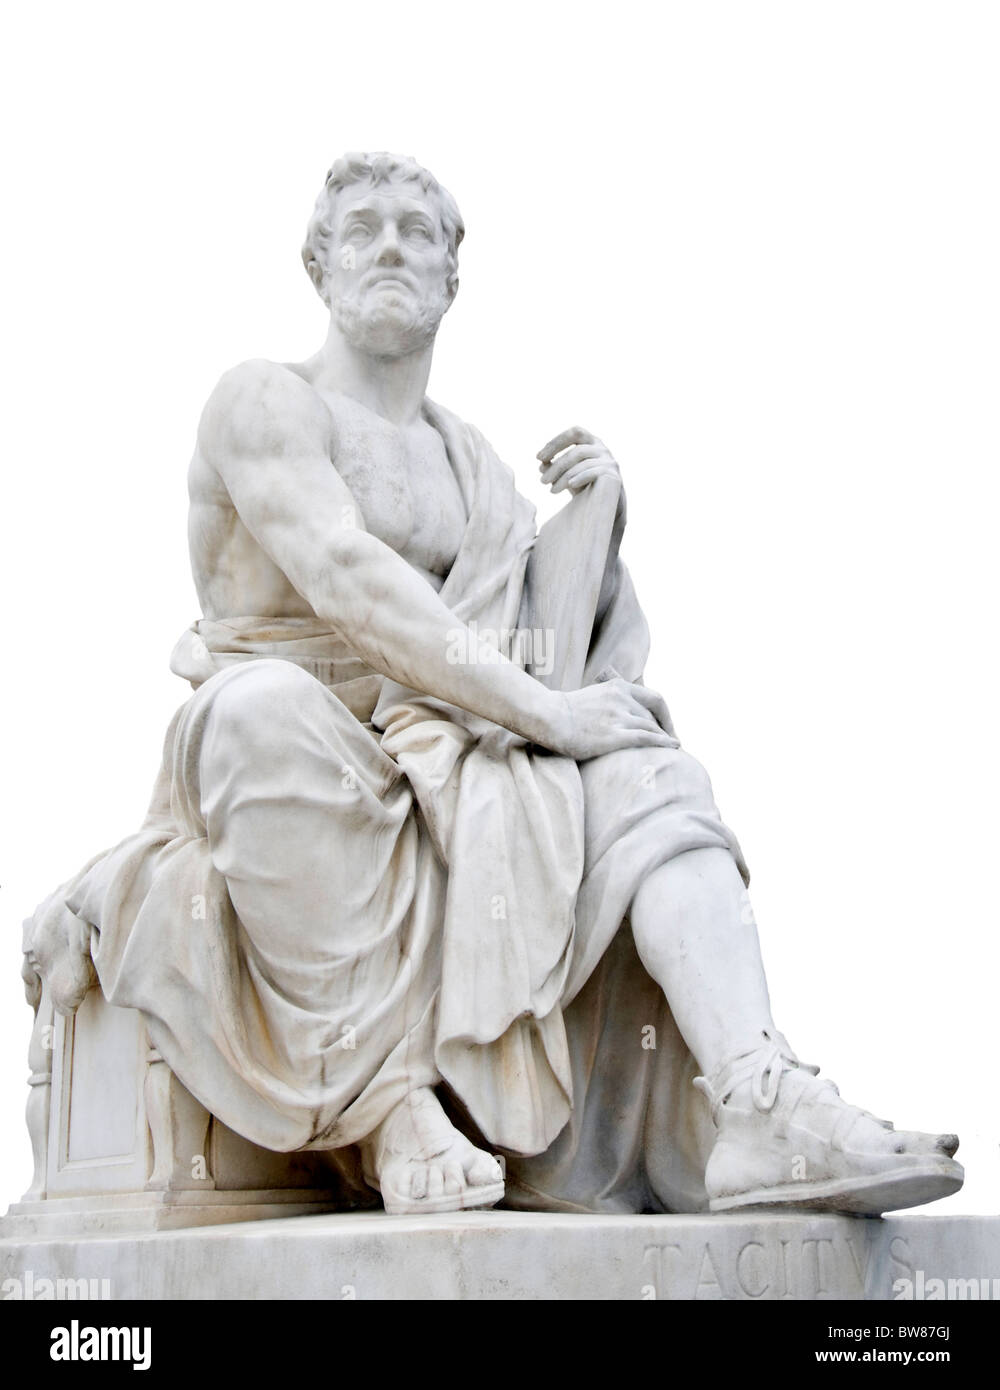 Wien, Österreich. Parlament. Statue von Tacitus (56 – 117 n. Chr.) Römischer Senator und Historiker Stockfoto